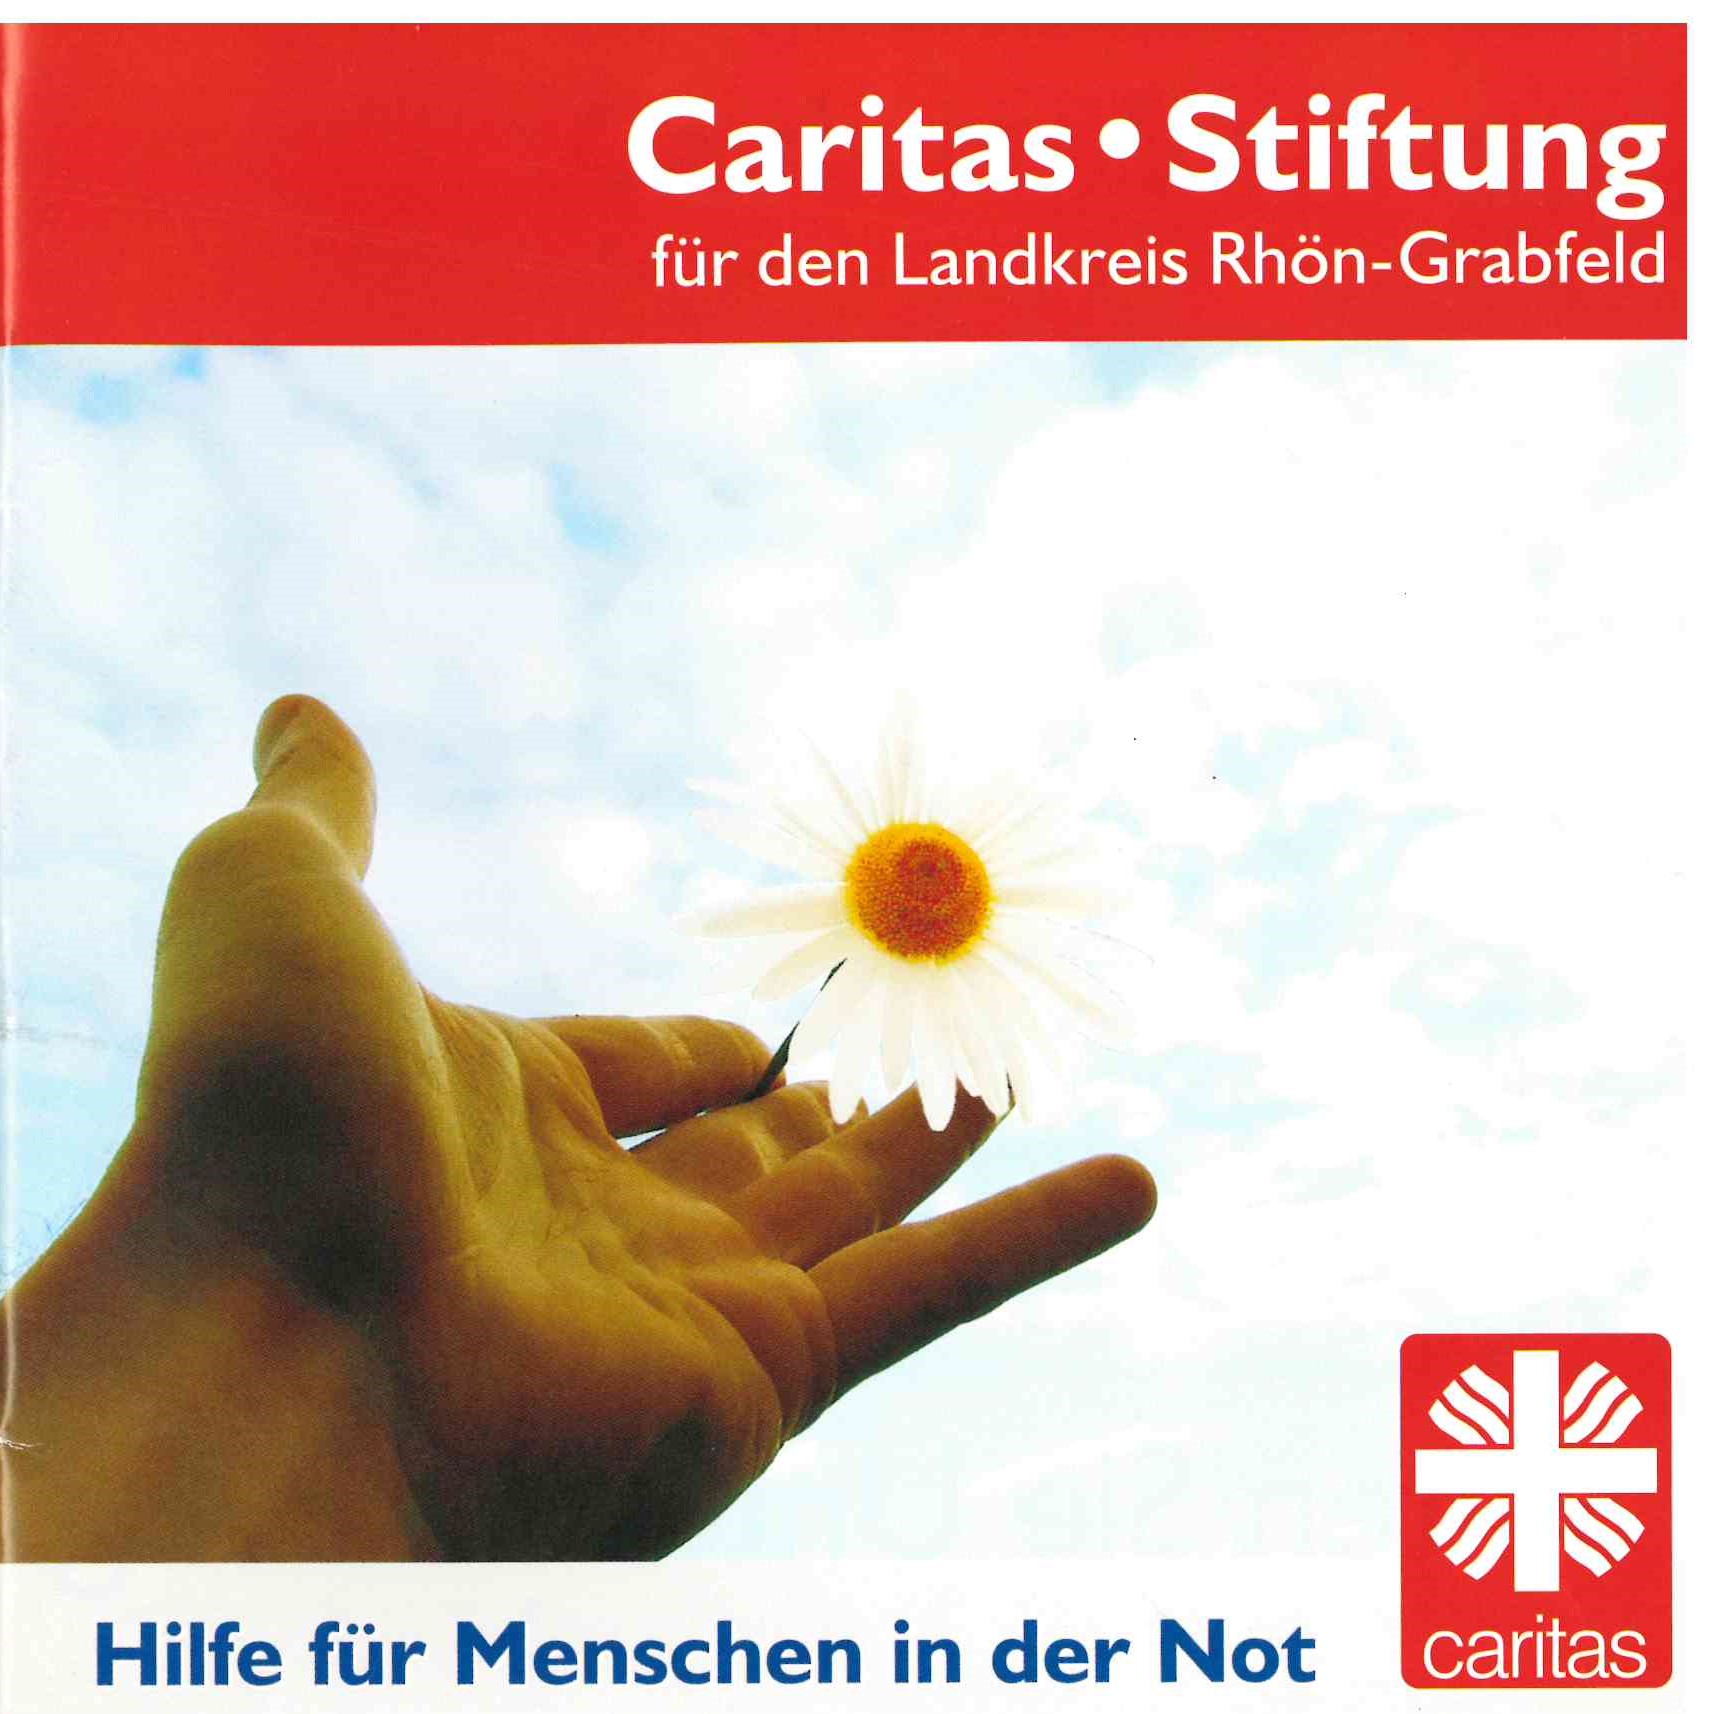 Caritasstiftung logo